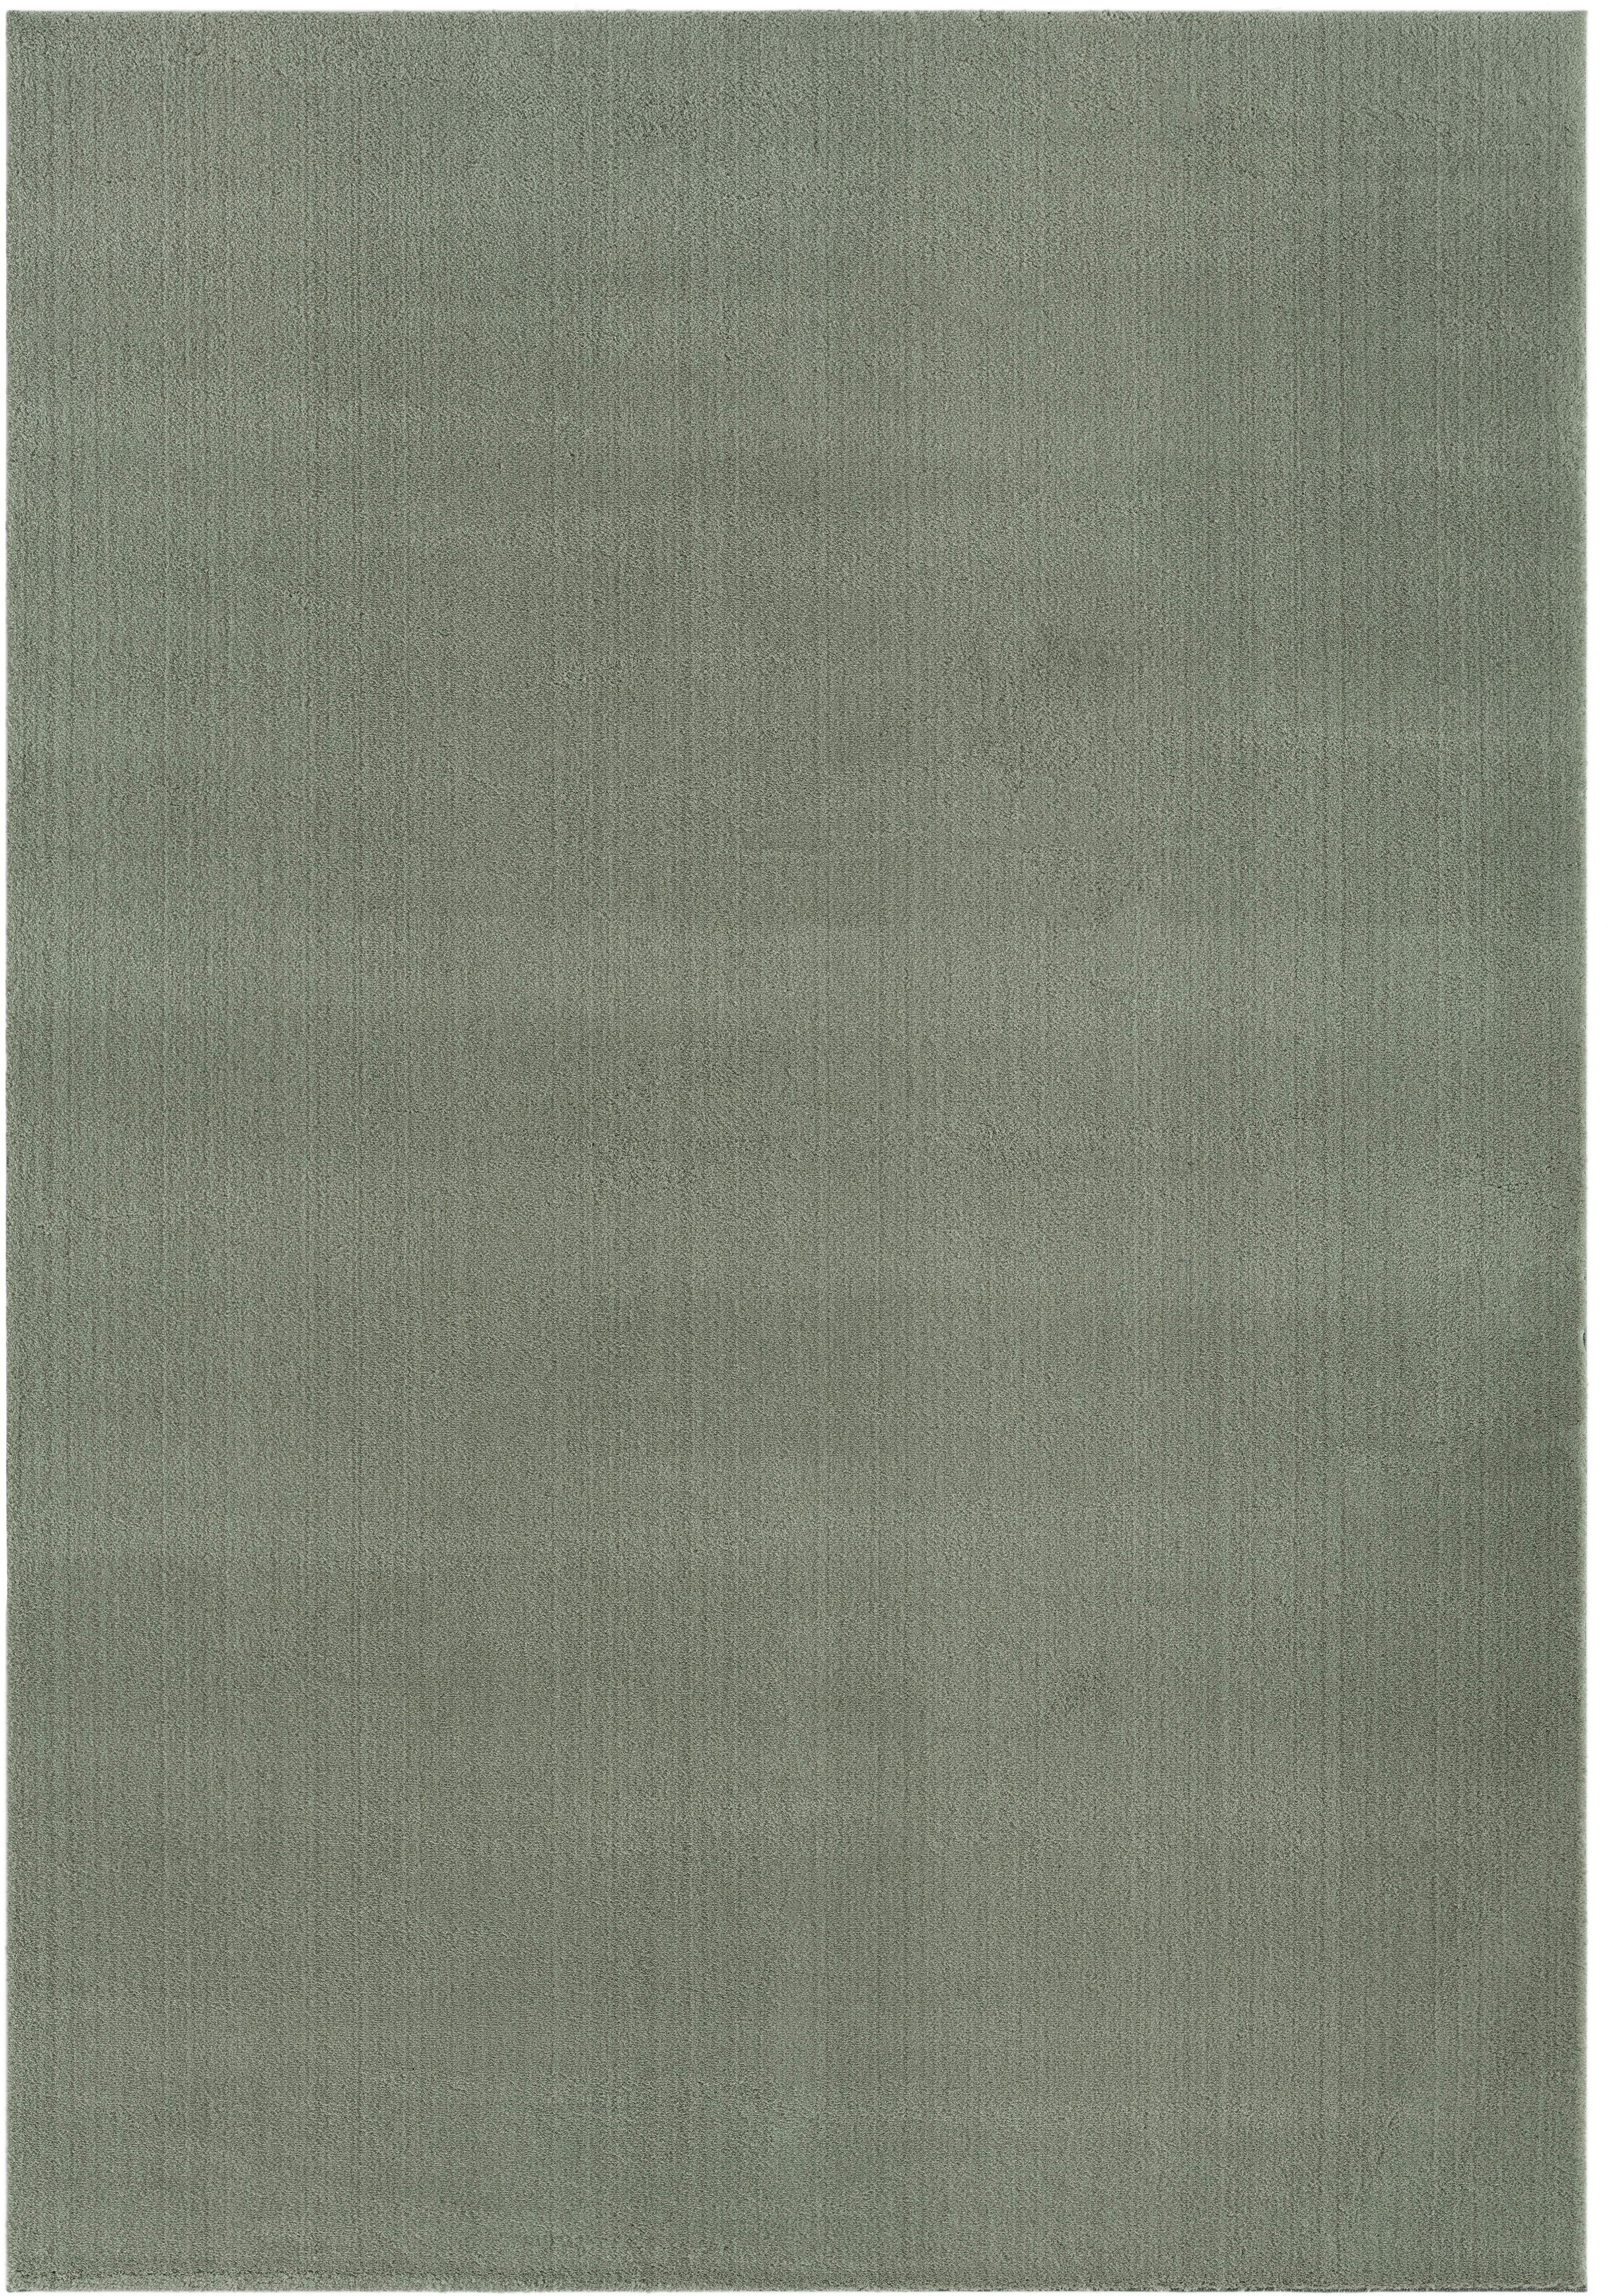 Fellteppich Melisander Grün 100x150 cm - Grün, Basics, Textil (100/150cm) - Luca Bessoni